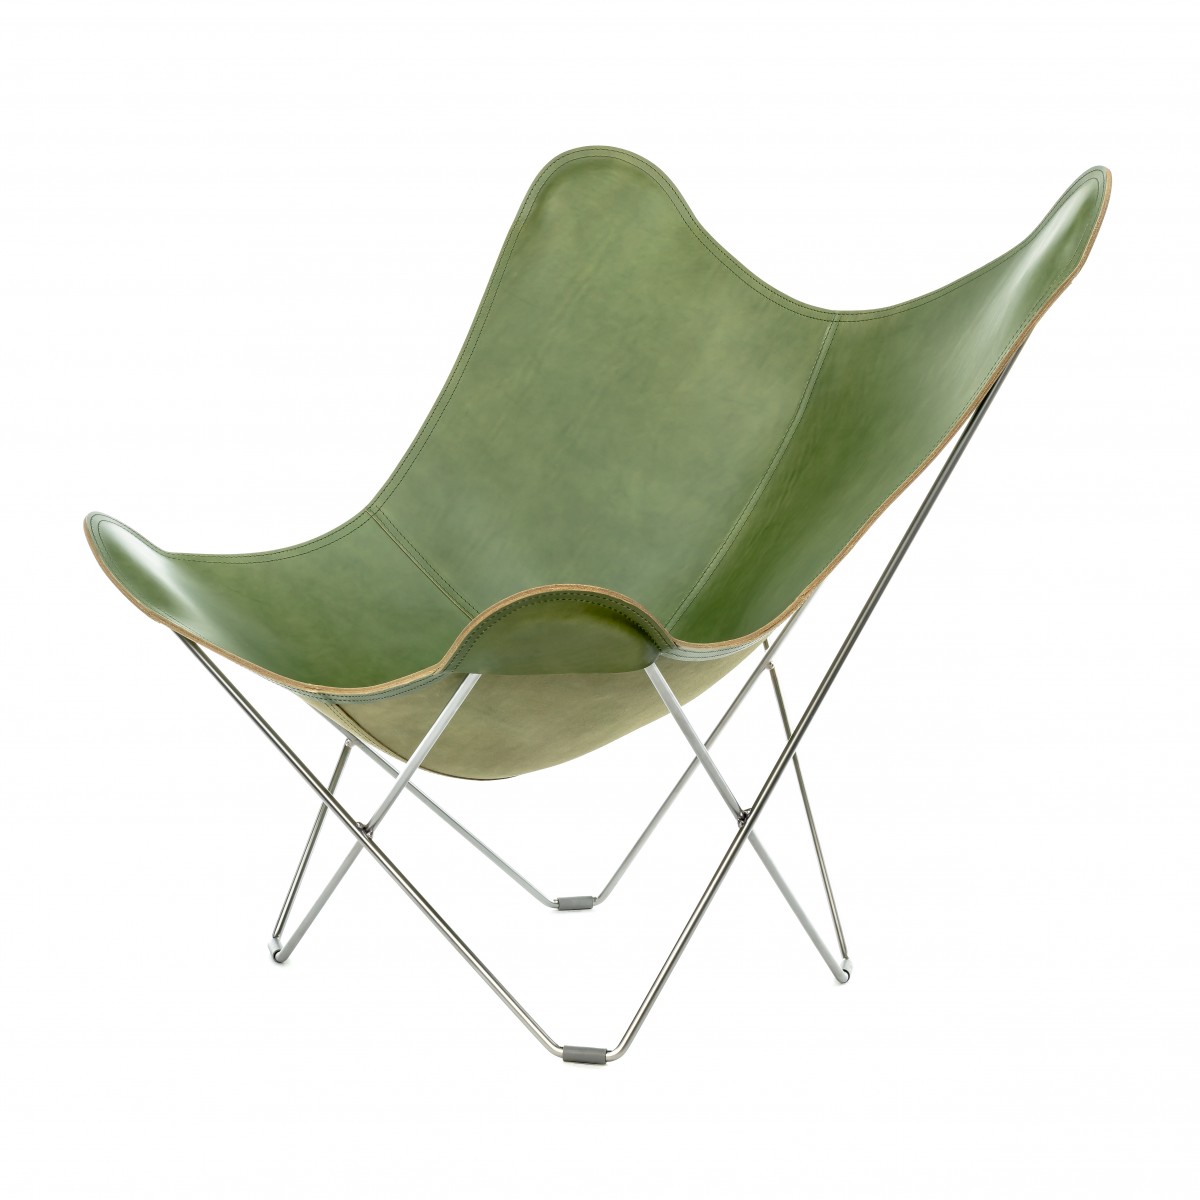 Por favor mira Cordero microscópico Hiper práctico, opte por esta silla de mariposa de diseño con acabados  perfectos.